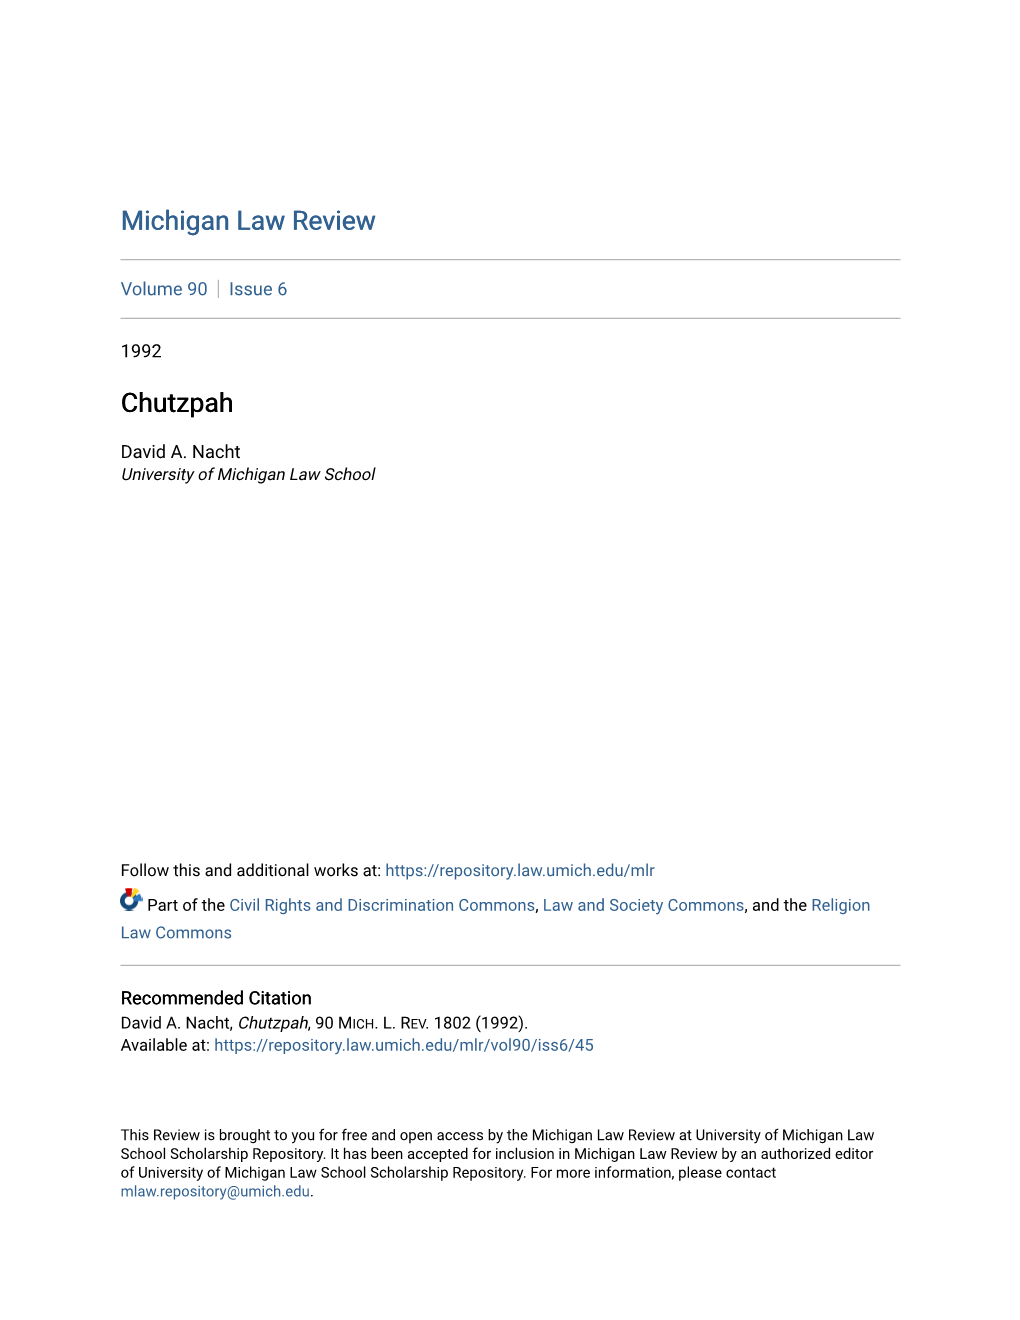 Michigan Law Review Chutzpah